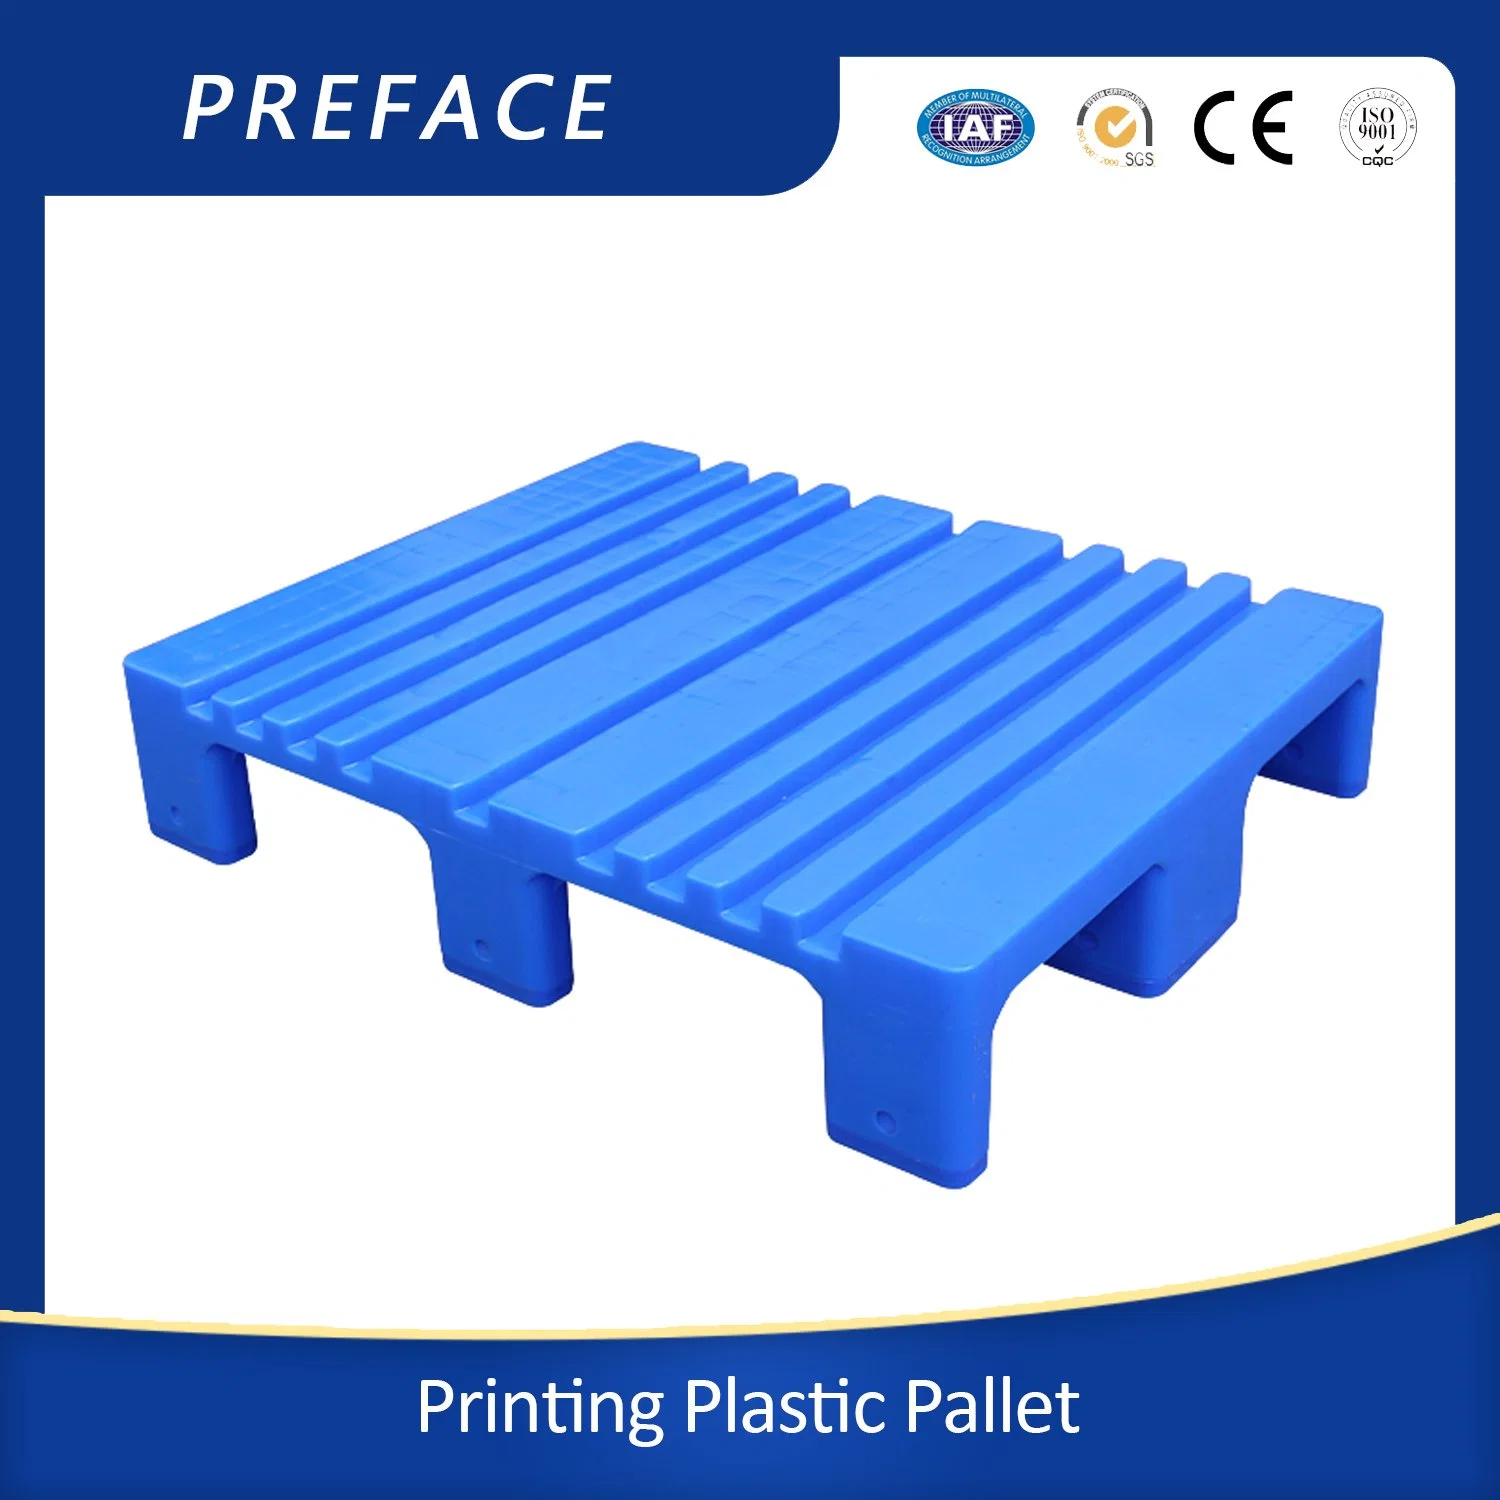 لوحة بلاستيكية للطباعة 800*650*140 مم مسطحة الجزء العلوي من HDPE بدون توقف تكديس ورق الماكينة